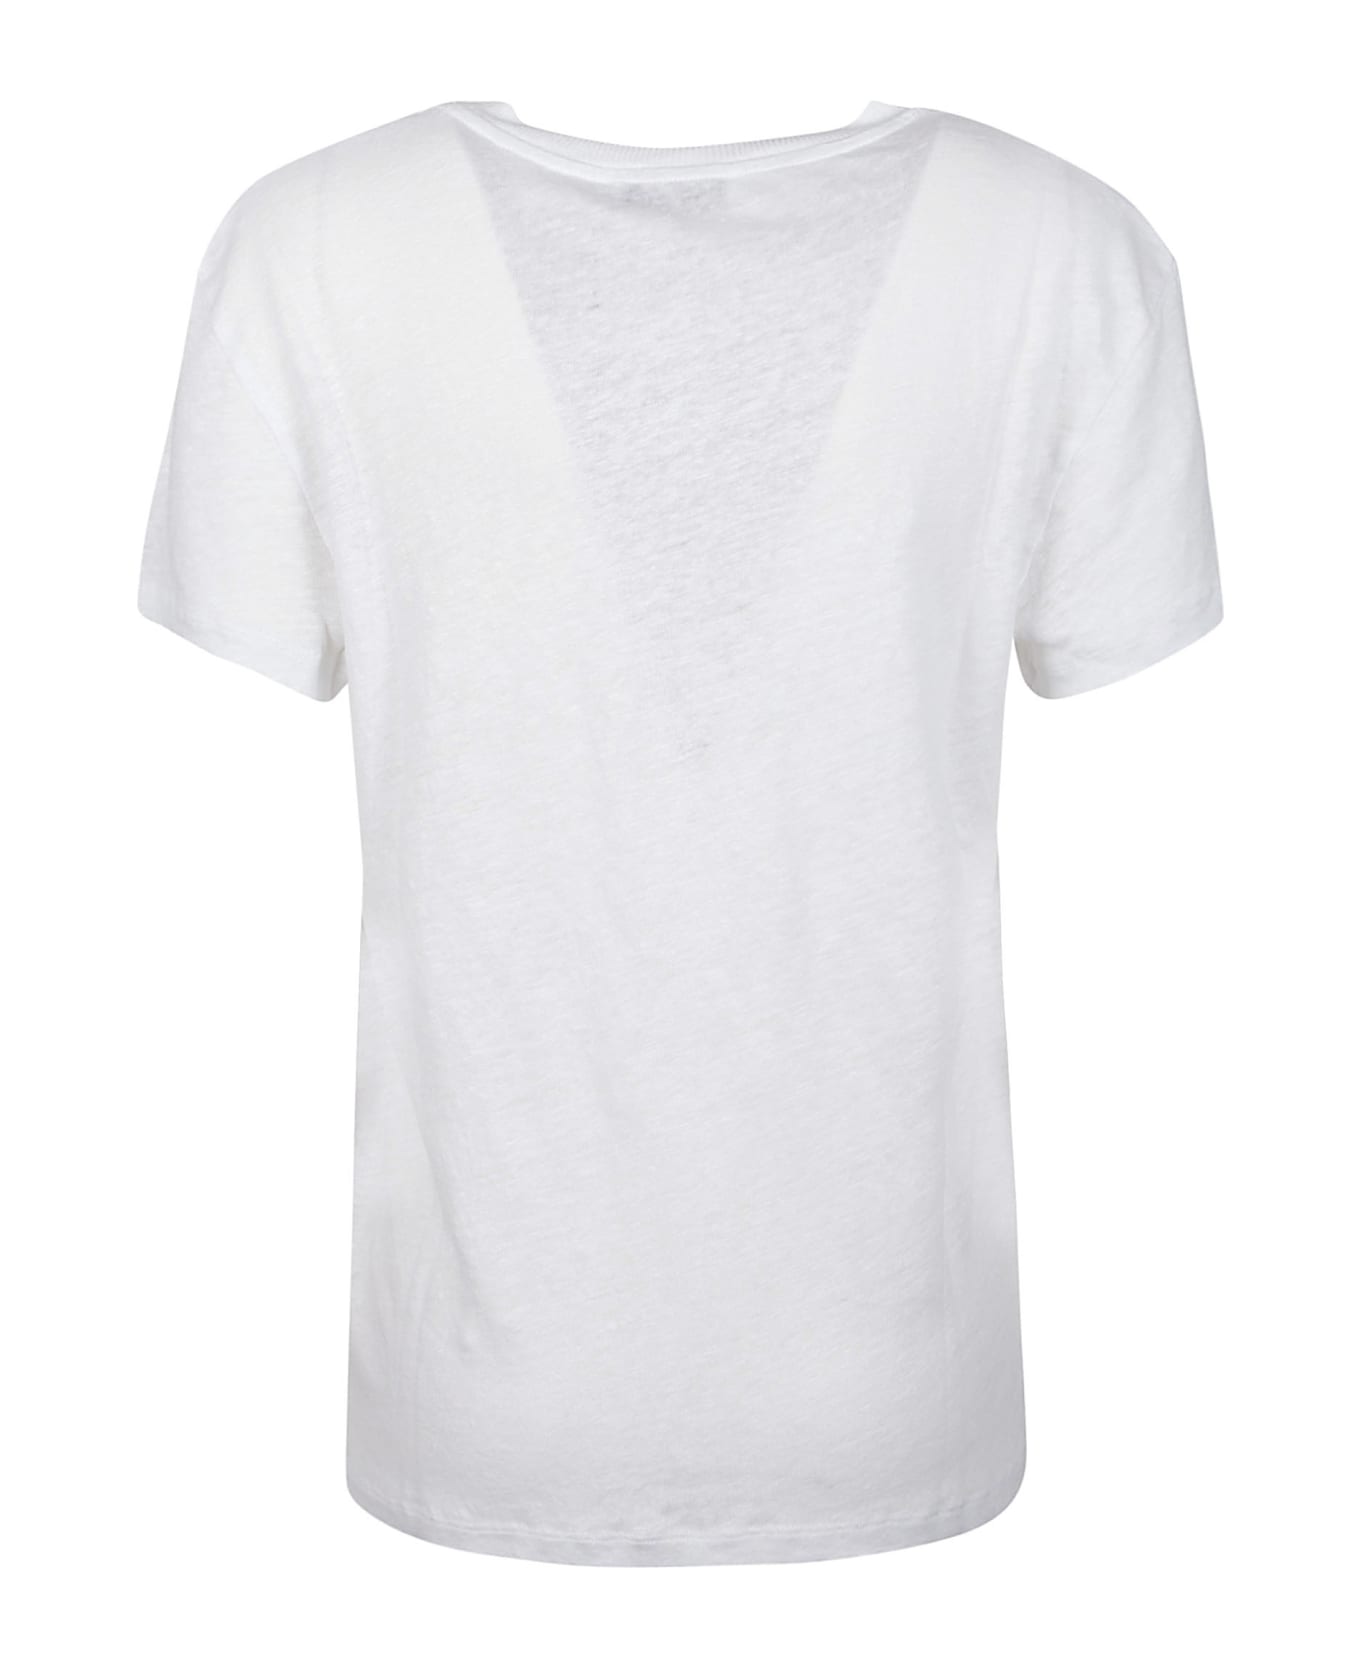 IRO Third T-shirt - White Tシャツ